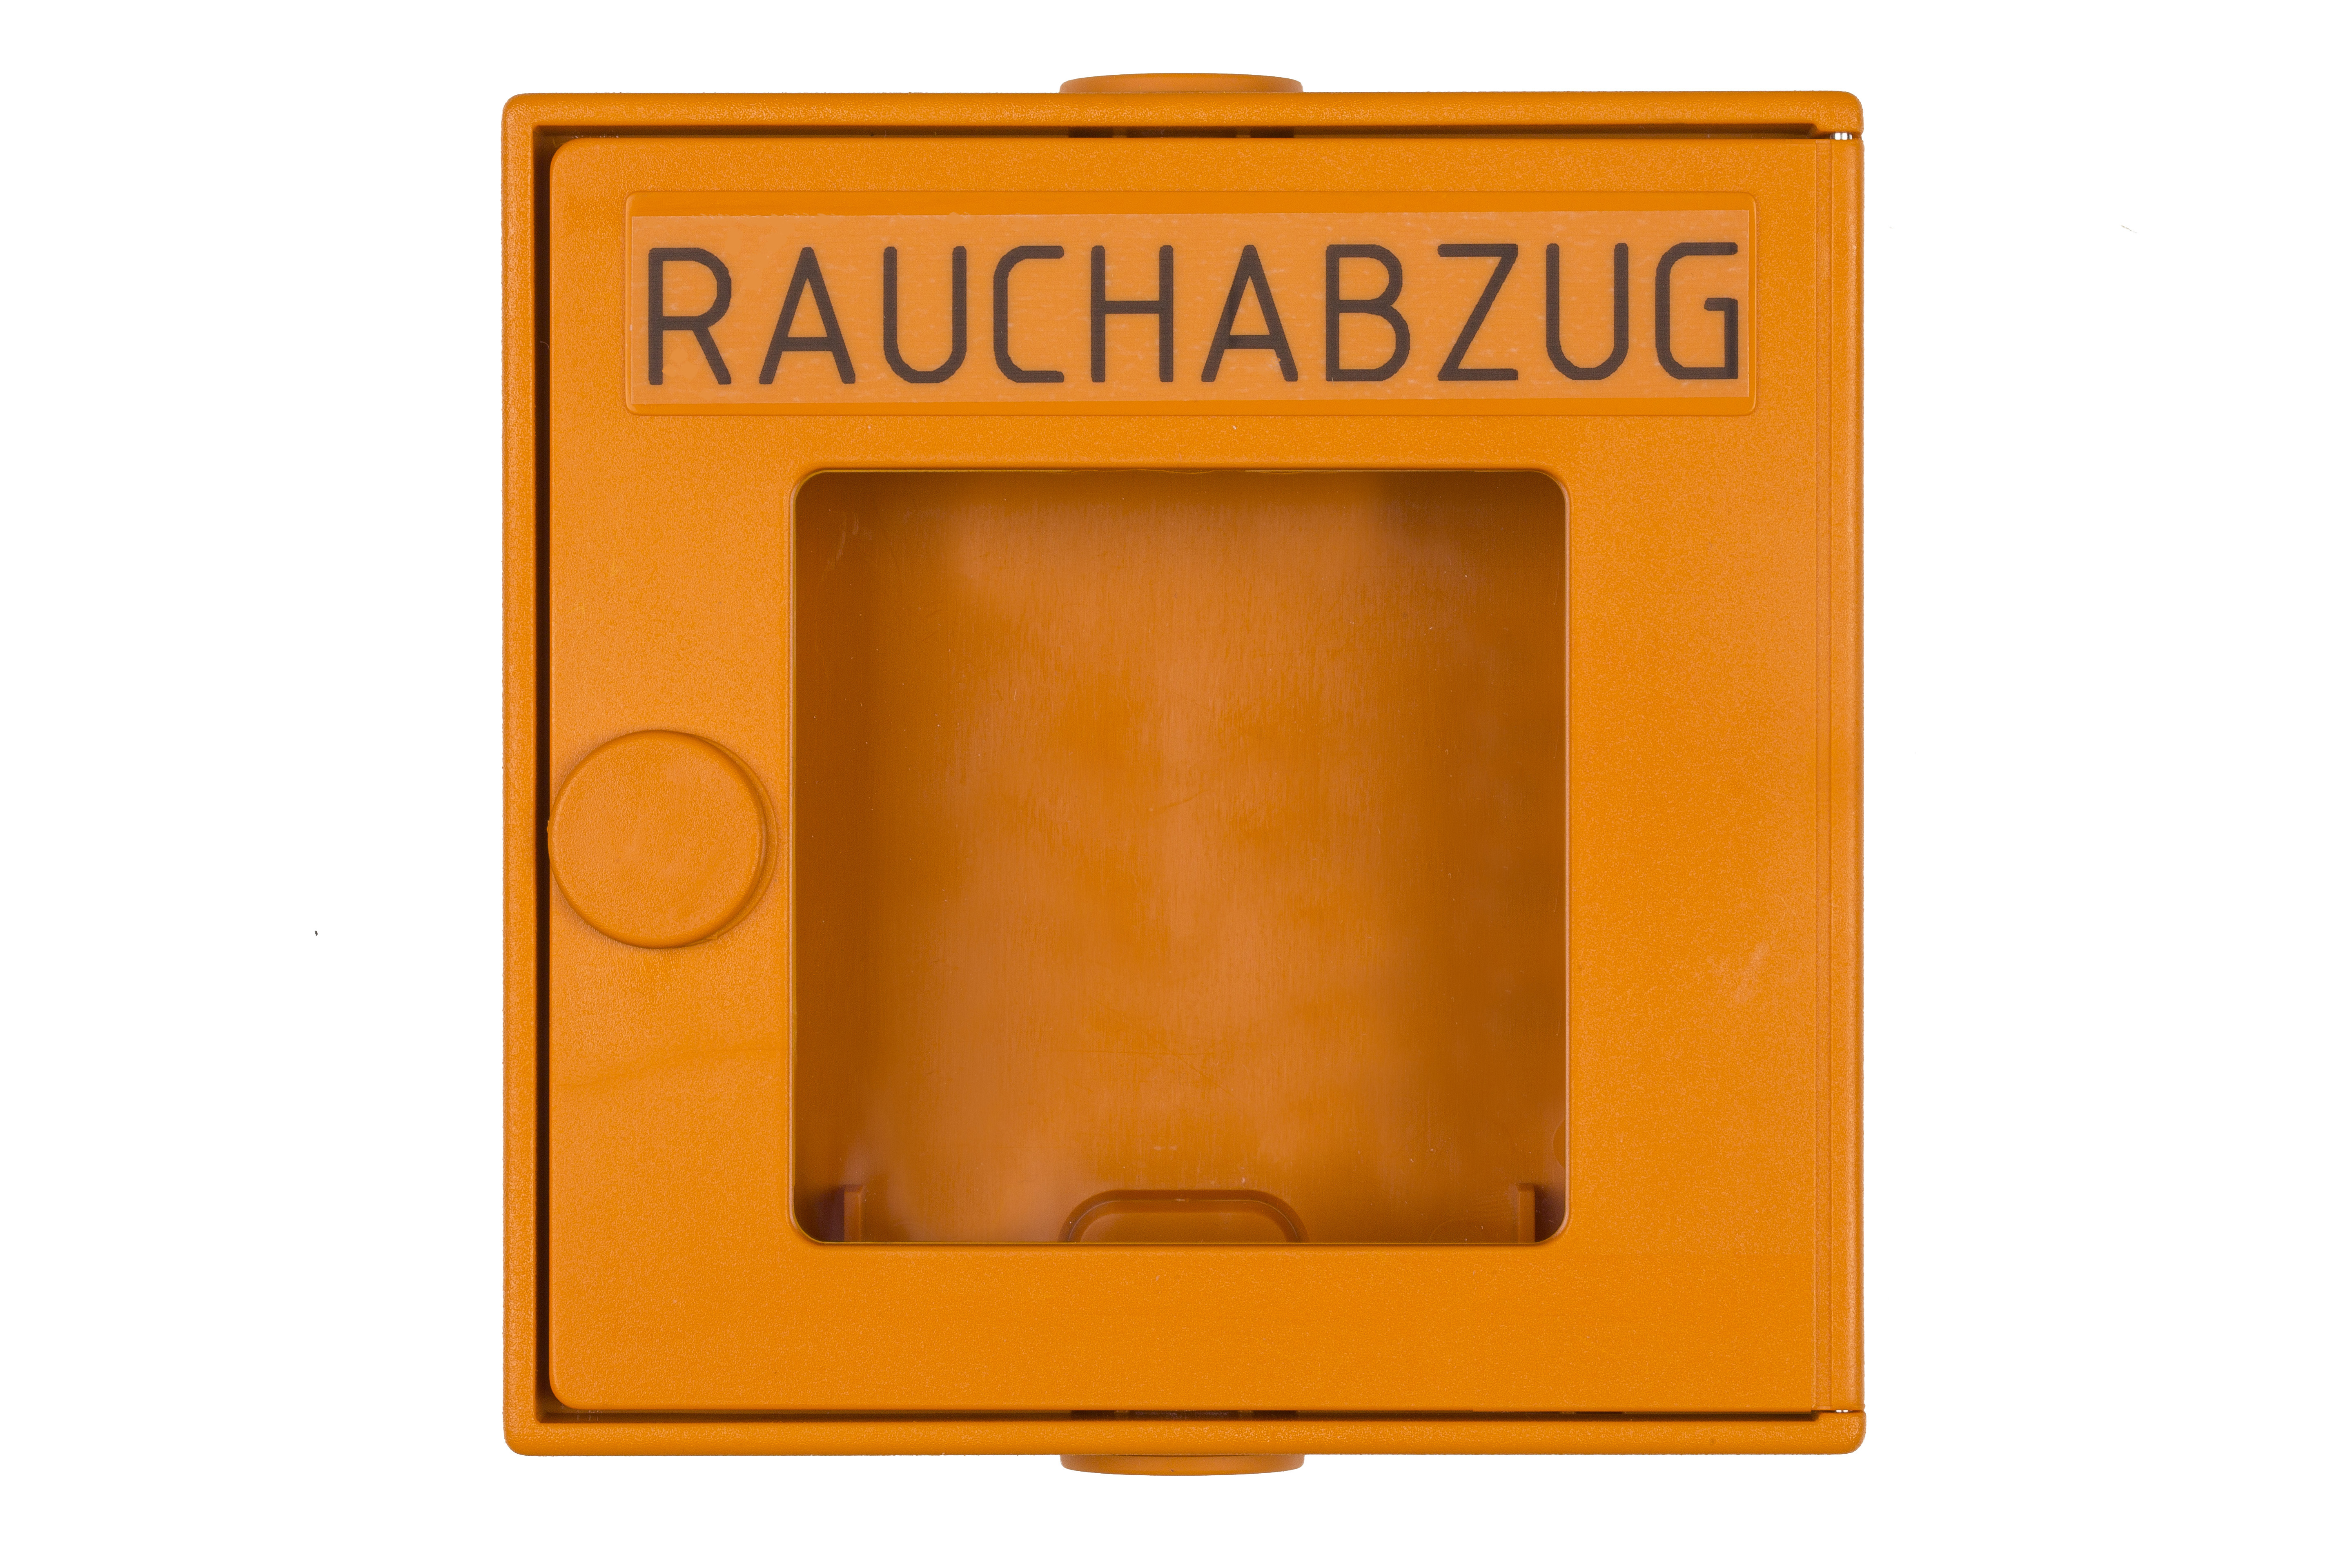 Leergehäuse in Alu für RWA-Taster RT-A   Farbe orange, inkl. Glasscheibe